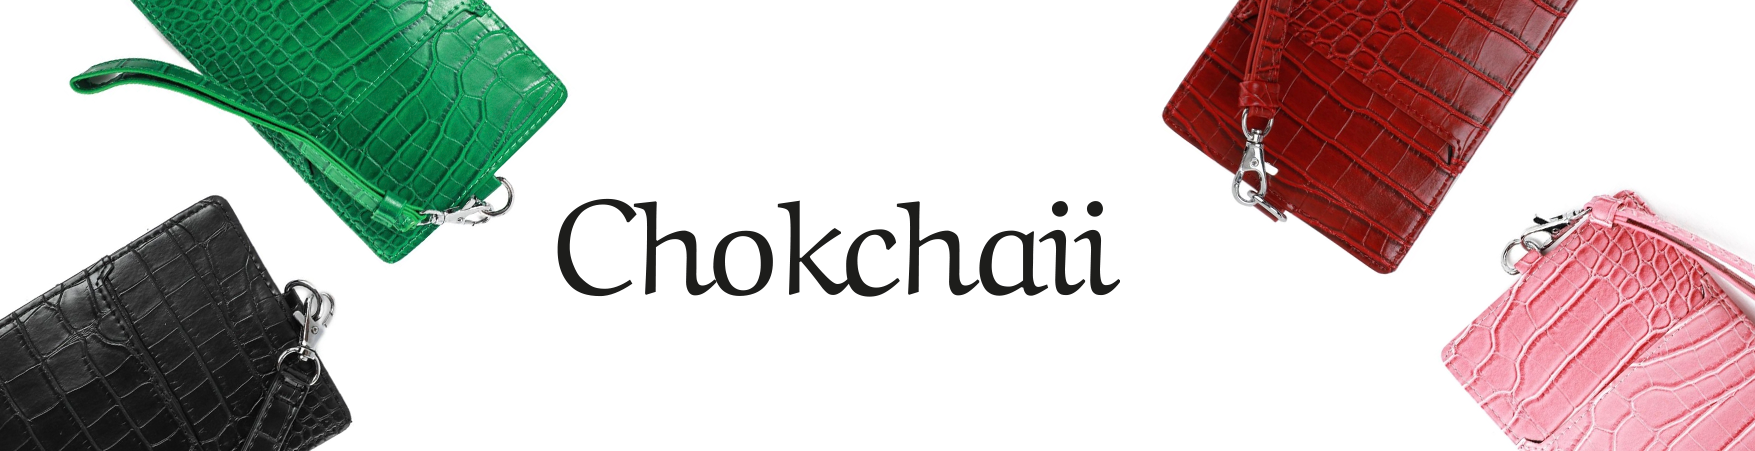 Chokchaii